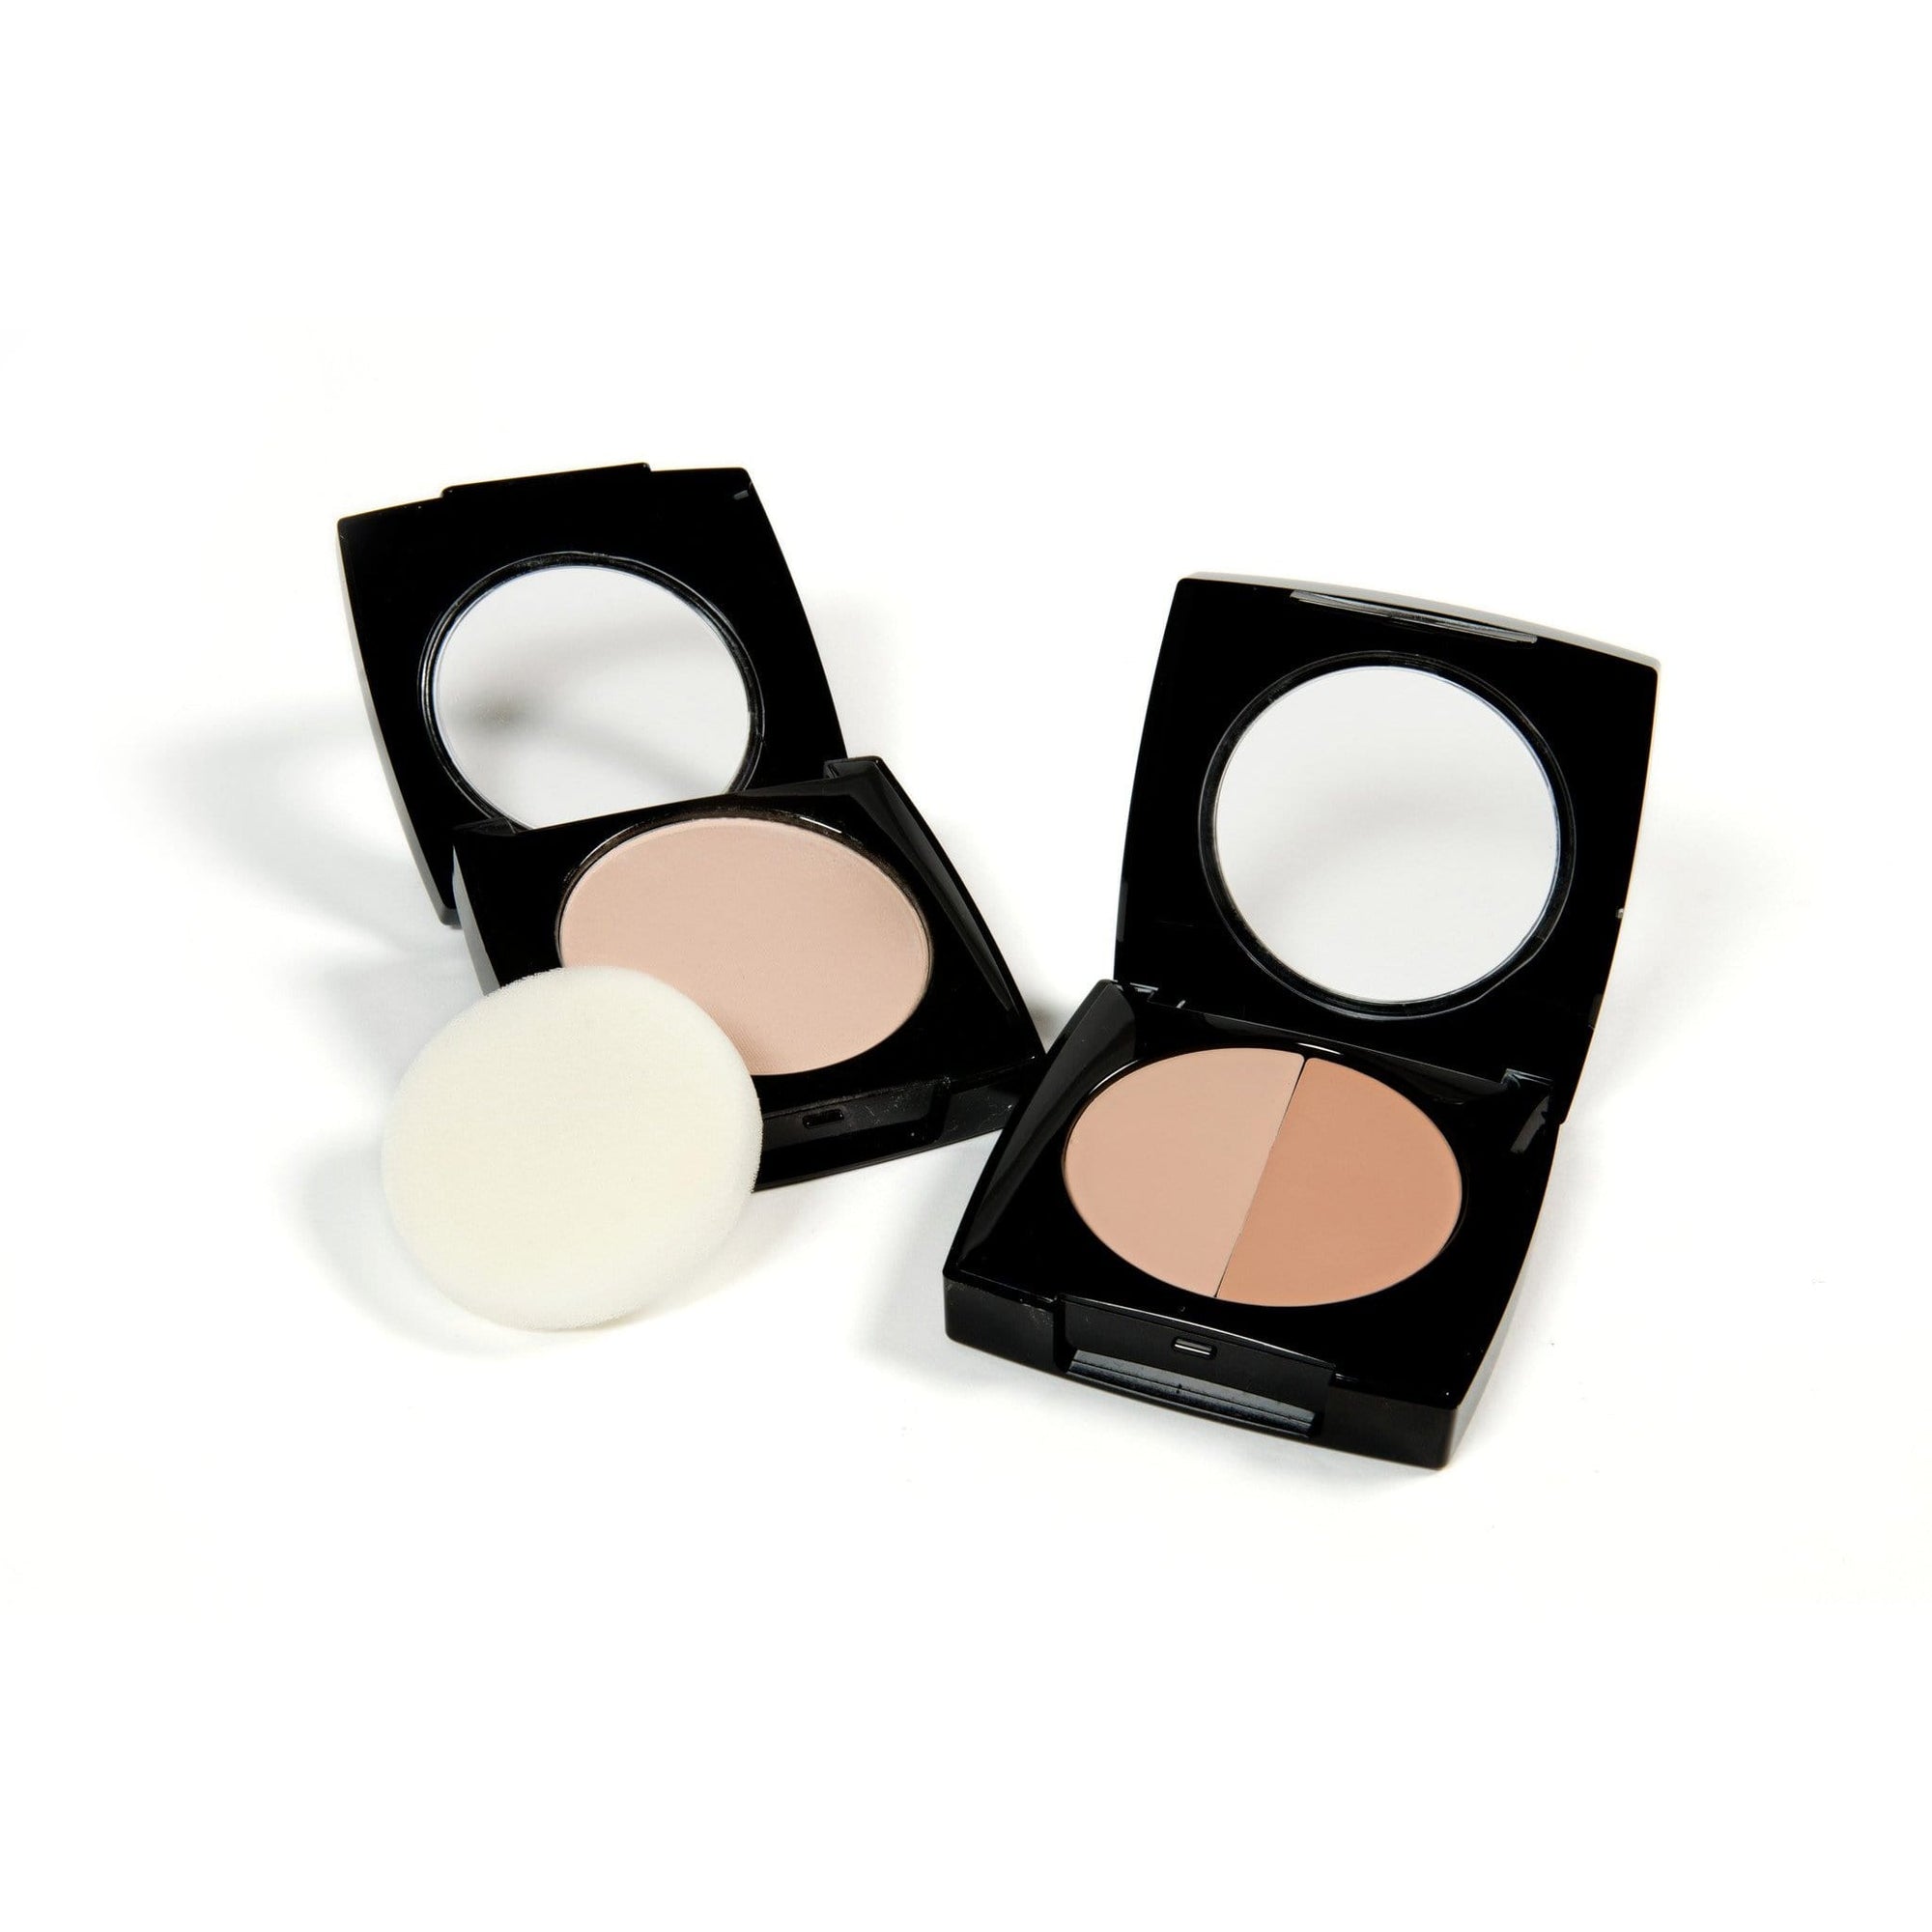 Danyel Cosmetics Foundation Danyel' Duo Blender Contouring Foundation - Ivory Petal/Soft Beige & Translucent Powder